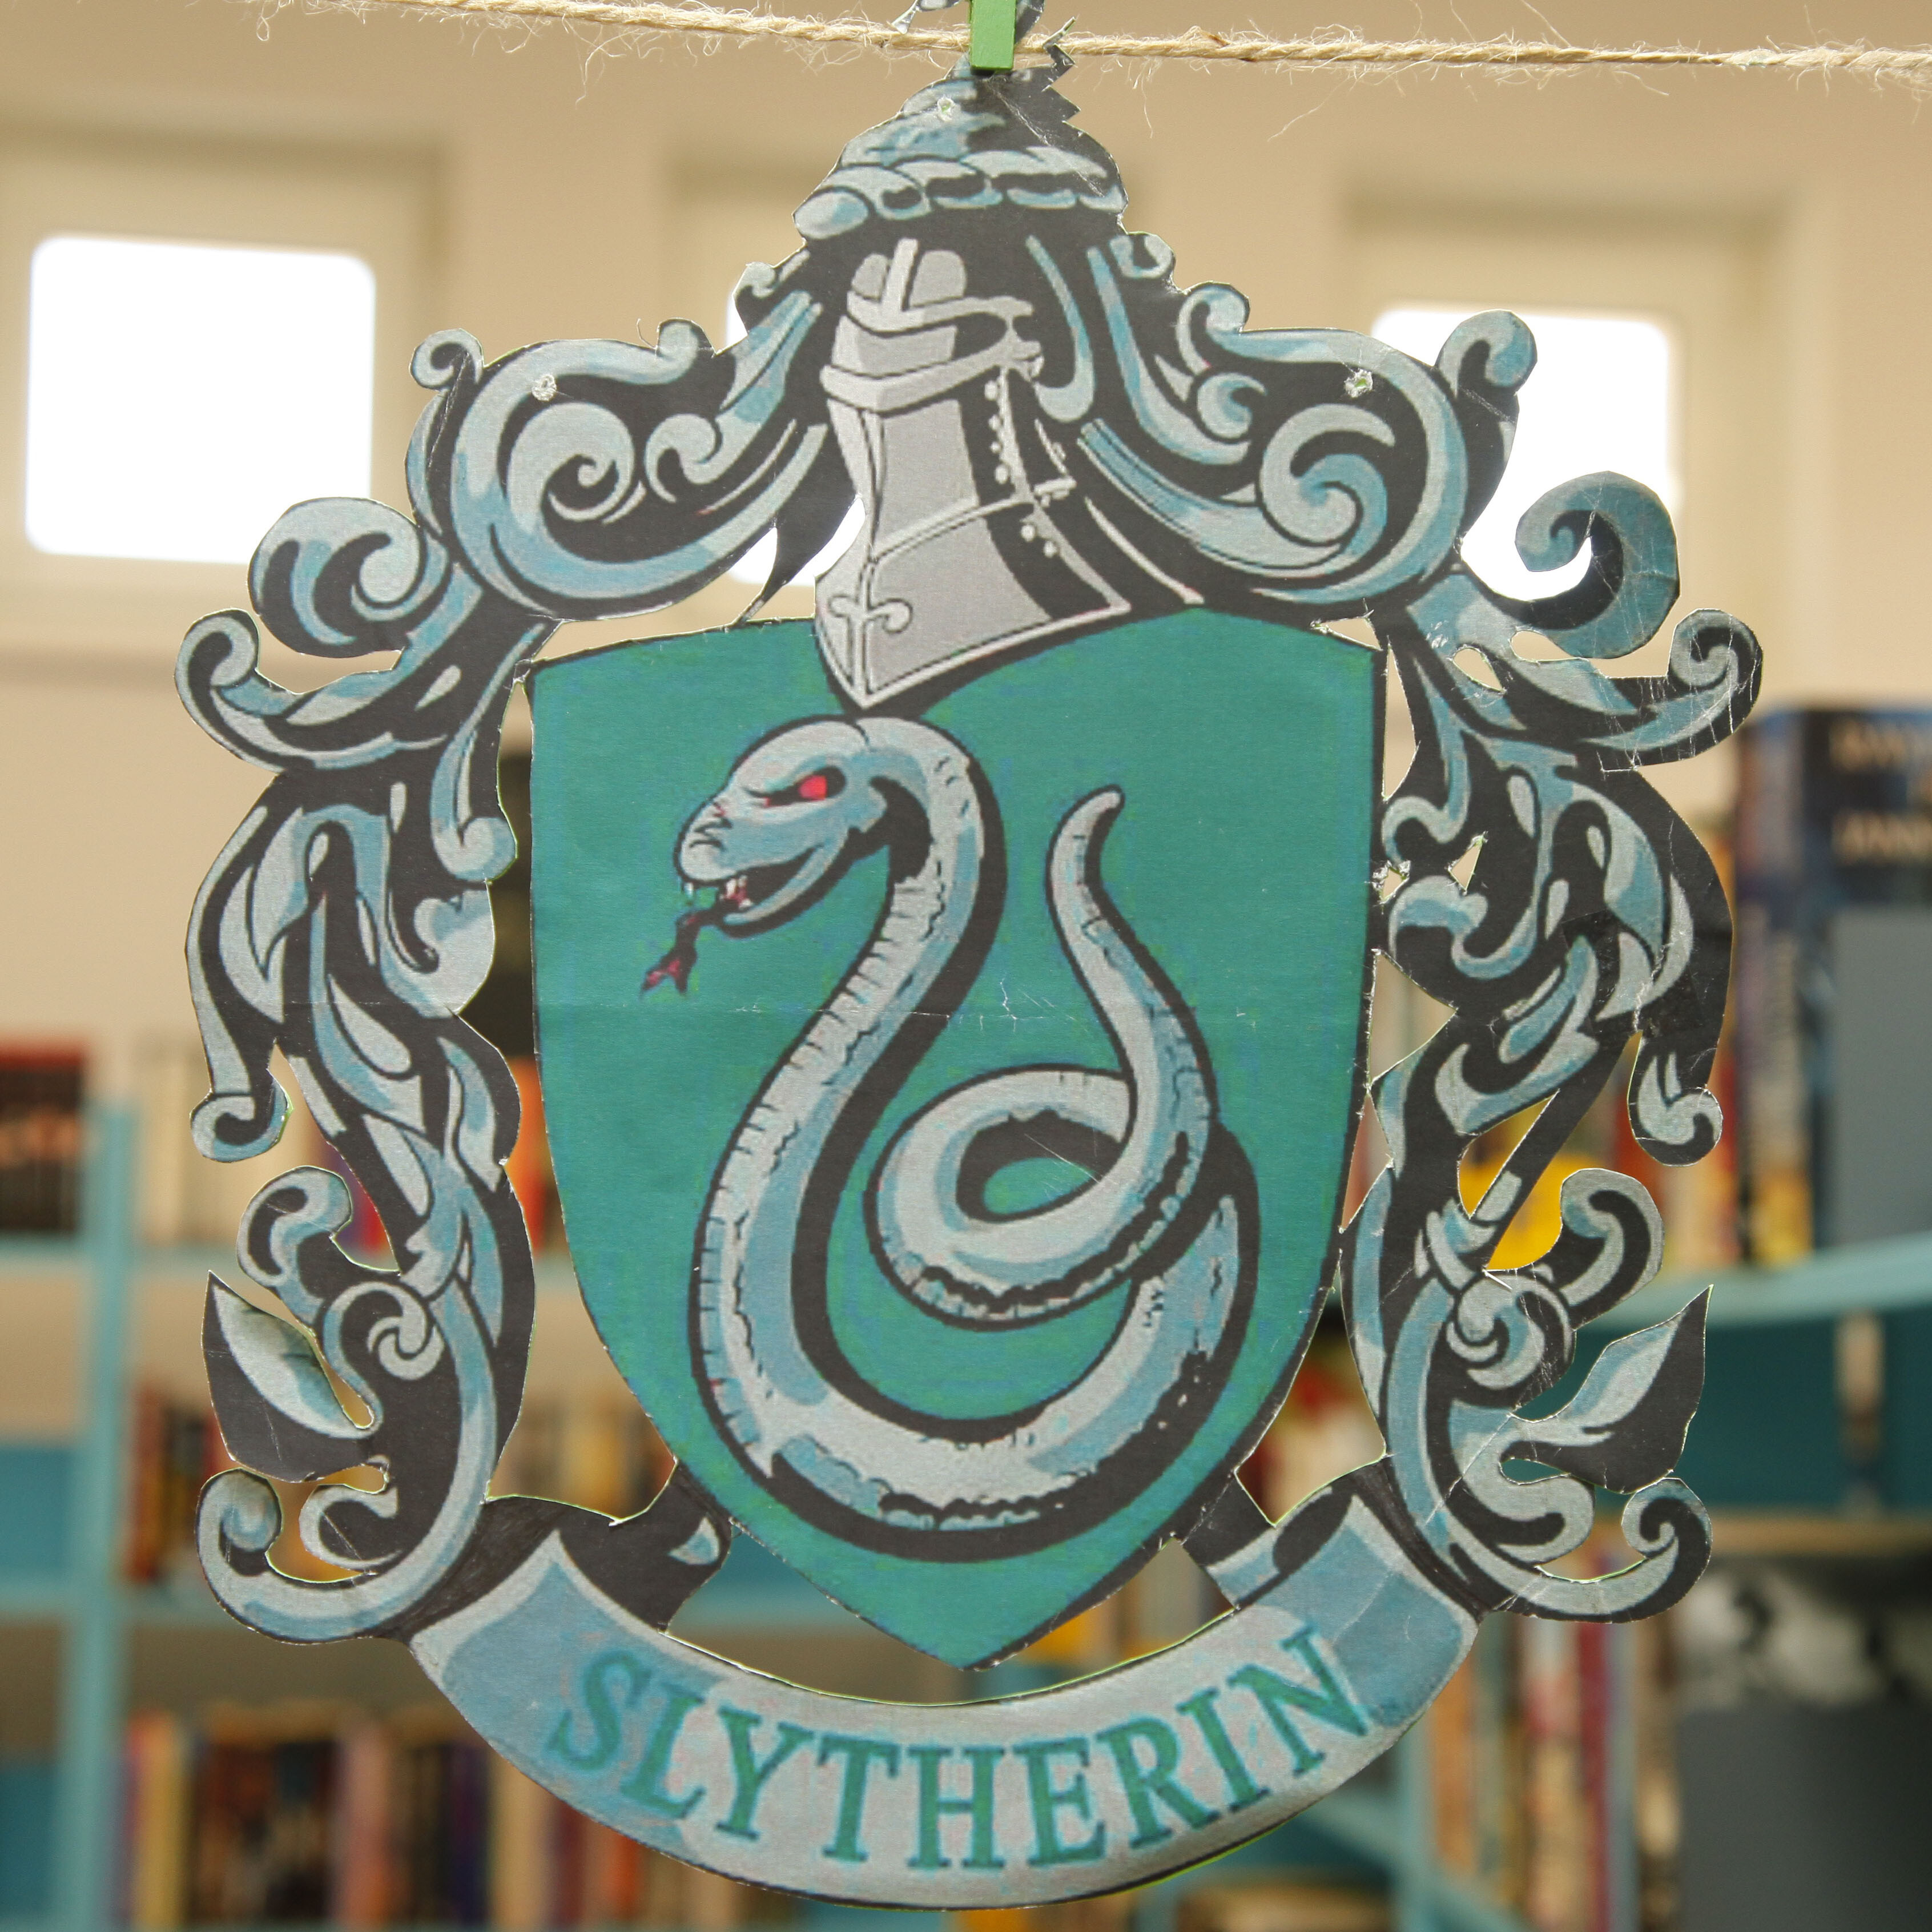 zdjęcie przedstawia herb Slytherin